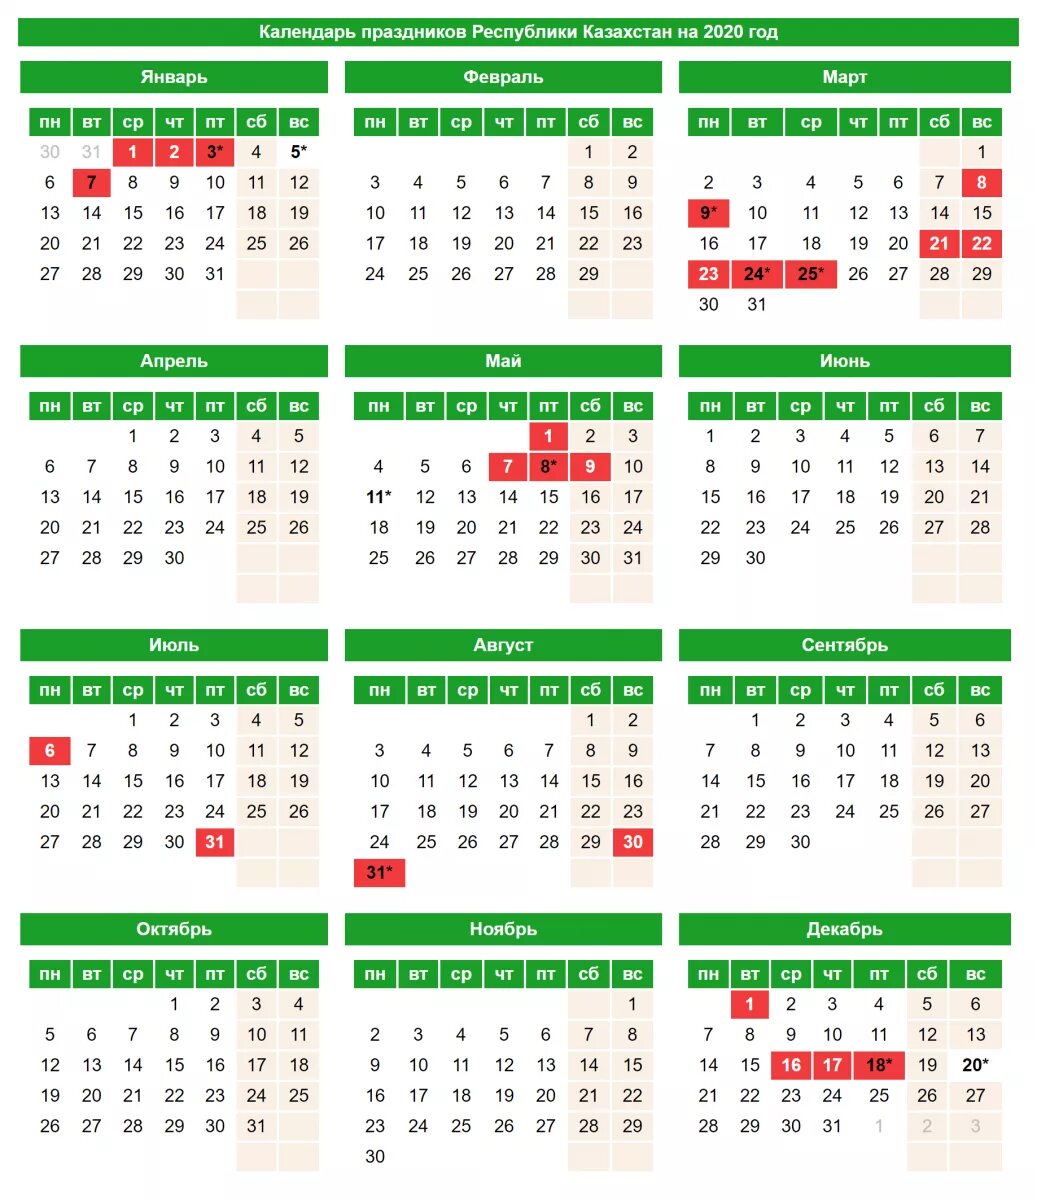 Праздничный календарь казахстан. Календарь праздничных дней в Казахстане на 2021 год. Календарь праздников 2020 Казахстан. Праздничные дни в Казахстане в 2021 году. Выходные и праздничные дни в 2021 году в Казахстане календарь.